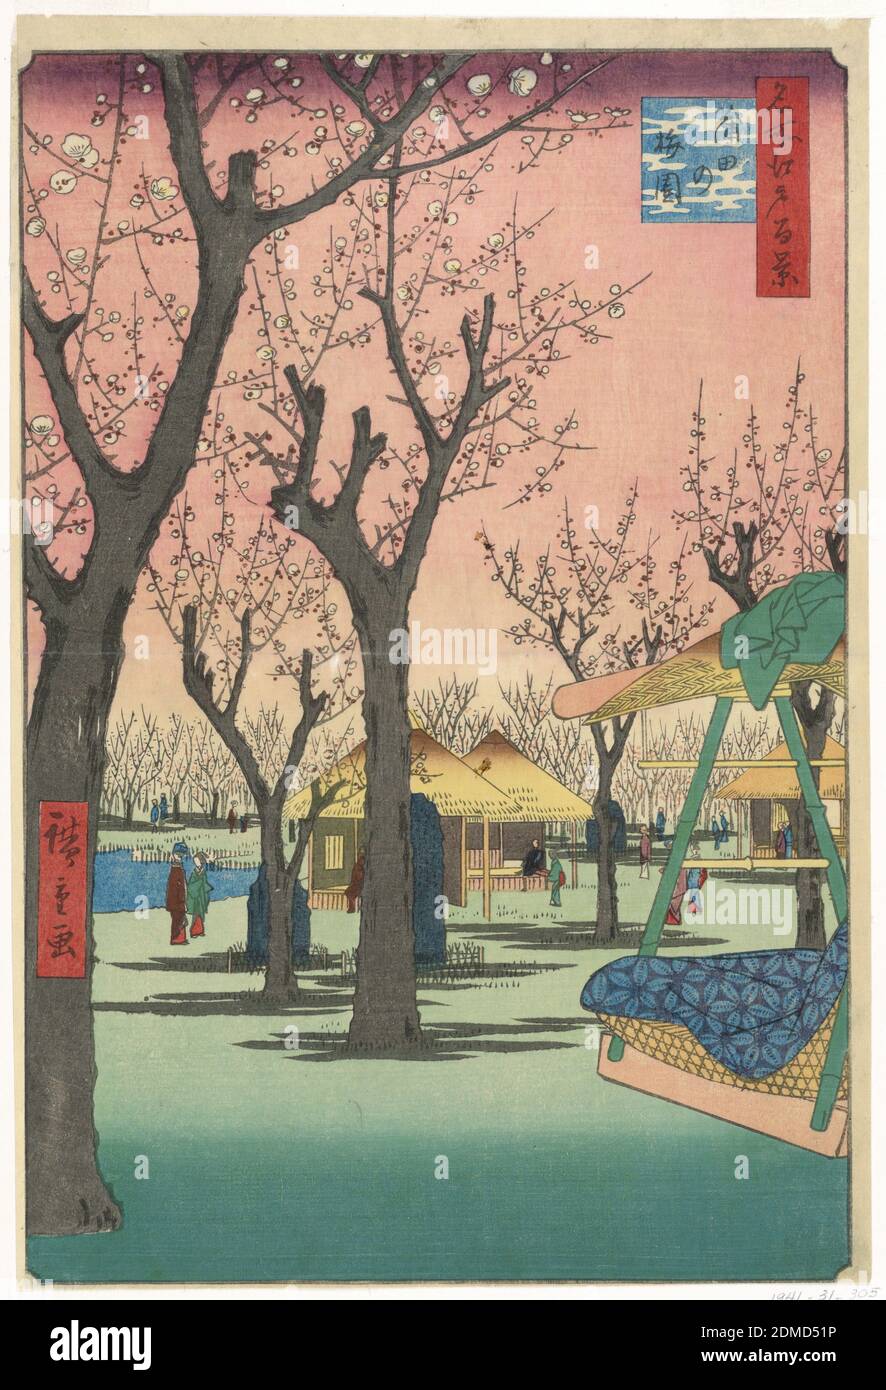 Plum Garden, Kamata (Kamata no Umezono) aus der Serie One Hundred Views of Edo, Ando Hiroshige, Japanese, 1797–1858, Holzschnitt in farbiger Tinte auf Papier zeigt die Szene des Pflaumengarten eine Abstufung des rosafarbenen Himmels, der die Blüten der Bäume ergänzt. Auf der rechten Seite befindet sich ein Palanquin mit dem grünen overgarment des Reisenden, das über die Oberseite geschleudert wird. Angenommen, er hat aufgehört, um Sake zu trinken, bewundern Sie die Kalligraphie auf den stelae Stein, sowie in der Schönheit der Natur zu nehmen. Im gesamten Druck sind ein Dutzend andere Figuren auch umarmen diesen besonderen Moment in der Zeit., Japan Stockfoto